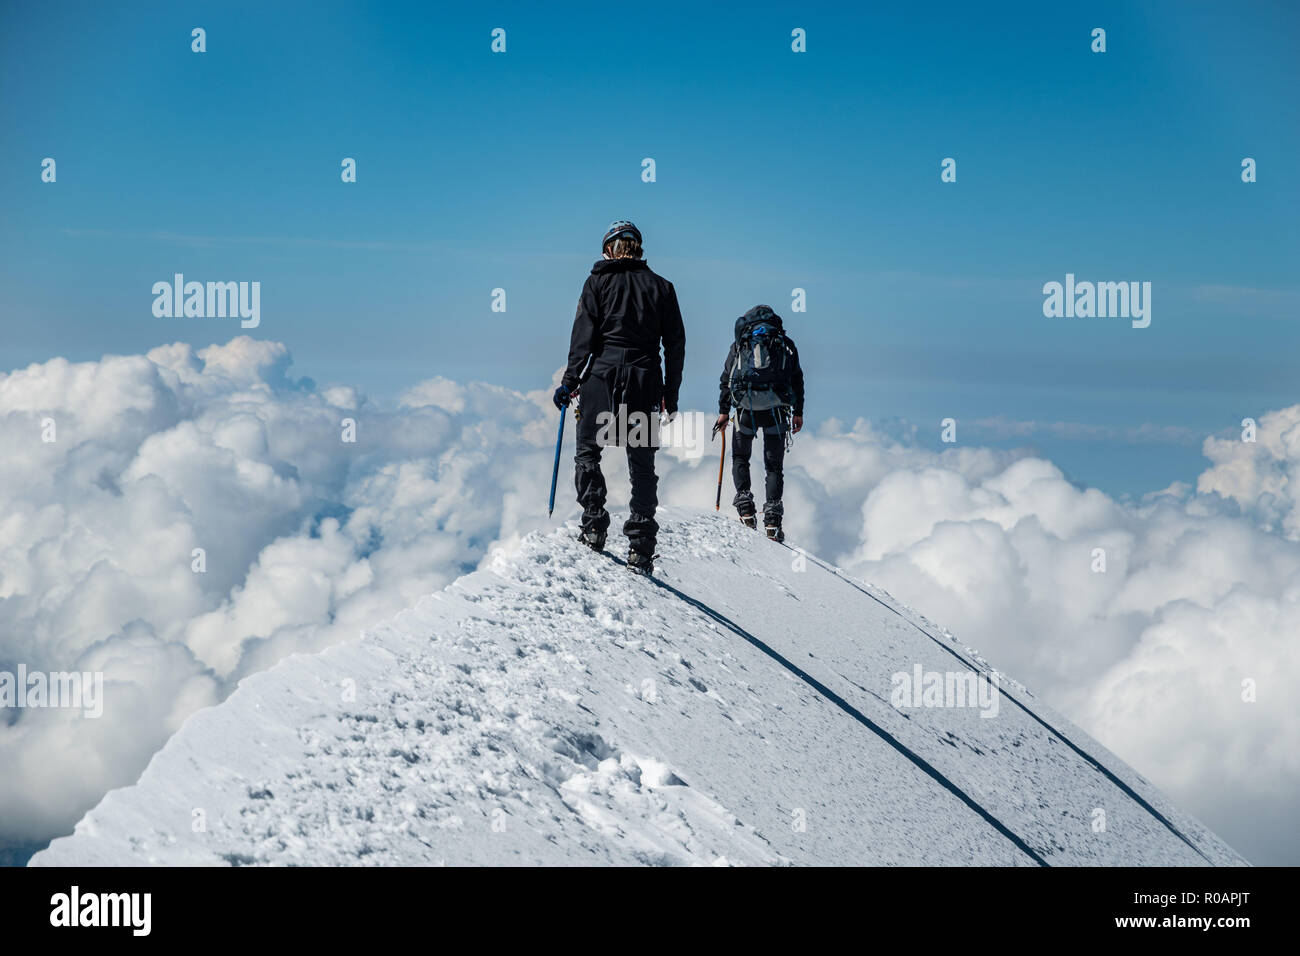 Alpinistes sur l'Aiguille de Bionnassay - sommet de neige extrêmement étroite crête au-dessus des nuages, massif du Mont Blanc, France Banque D'Images